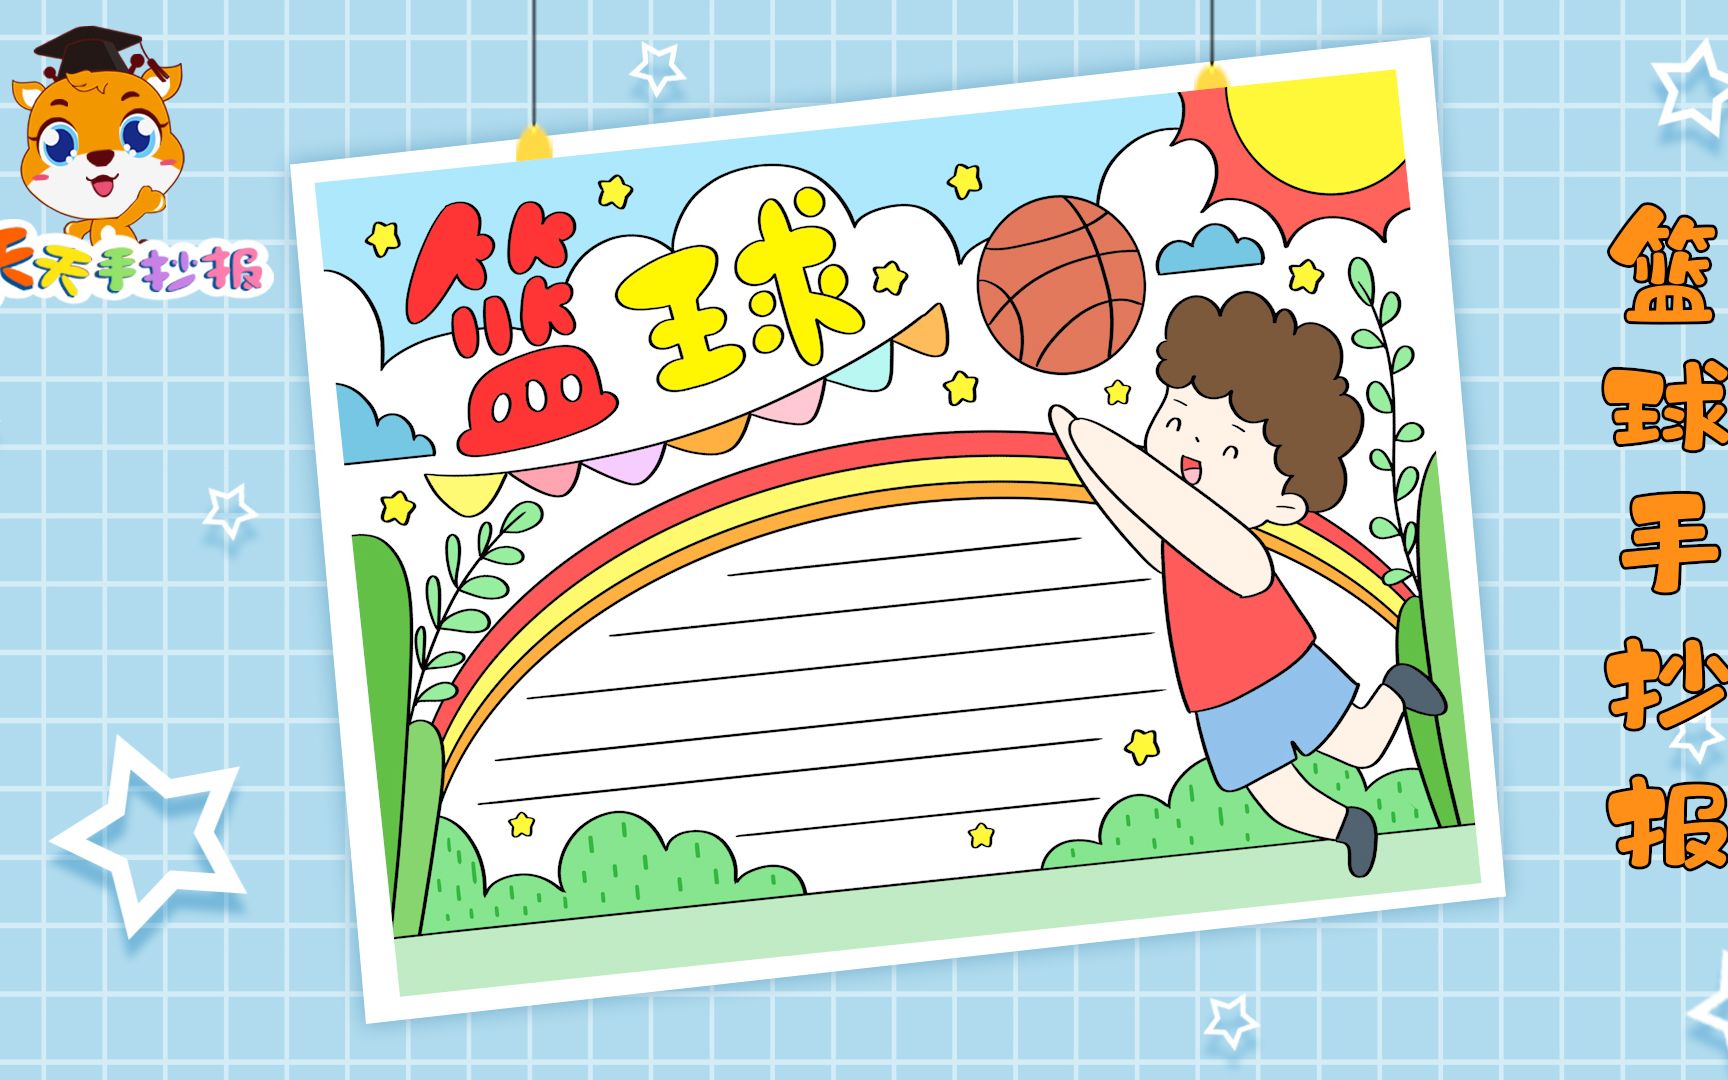 【天天手抄报】小学生篮球手抄报模板教程,十分好看的篮球小报,画起来